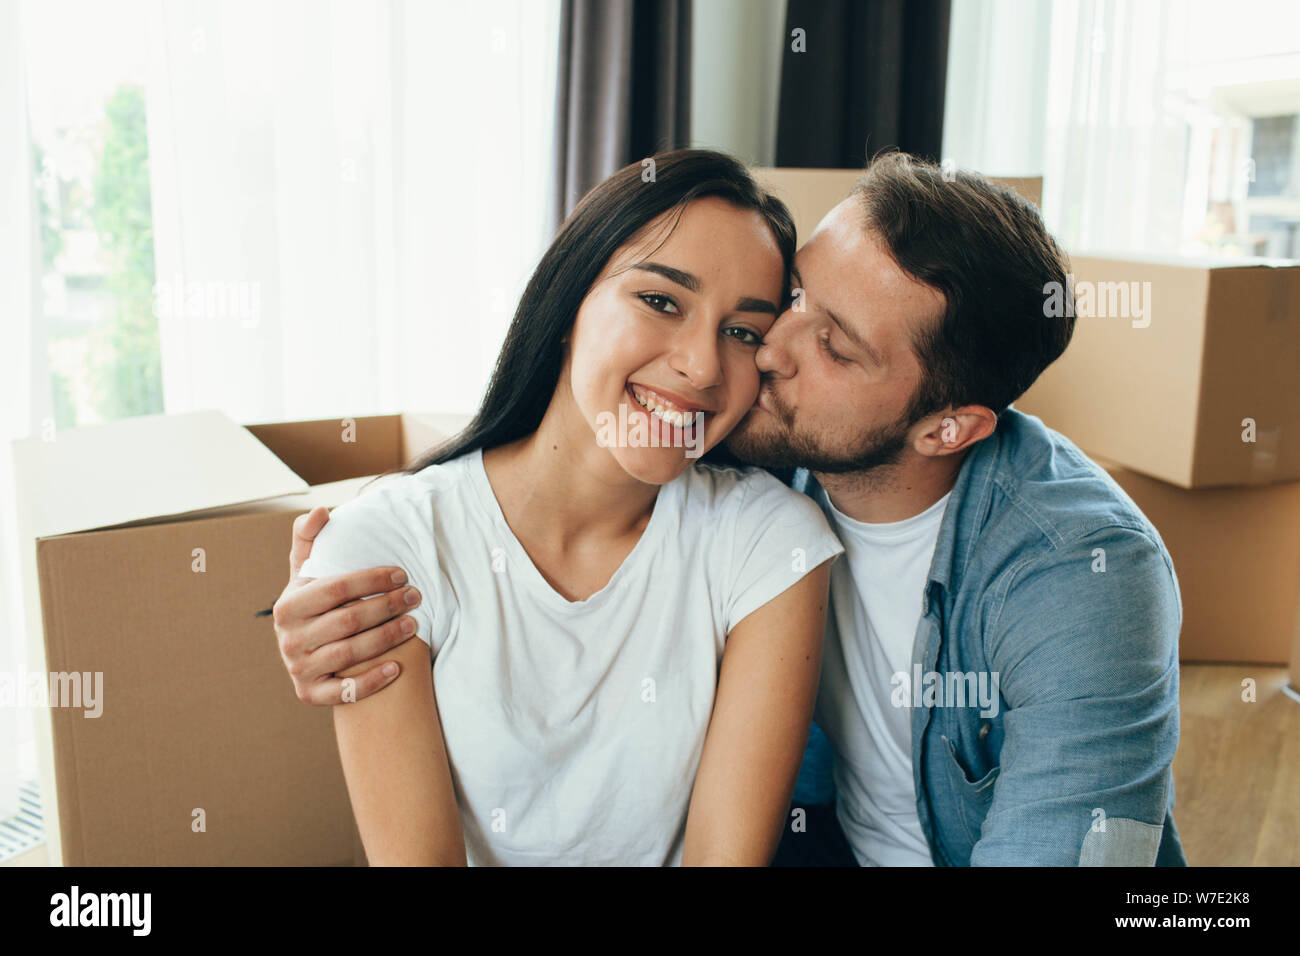 Mixed Race couple heureux se déplaçant à une nouvelle maison. Man and Woman hugging et assis sur le sol près de boîtes de carton Banque D'Images